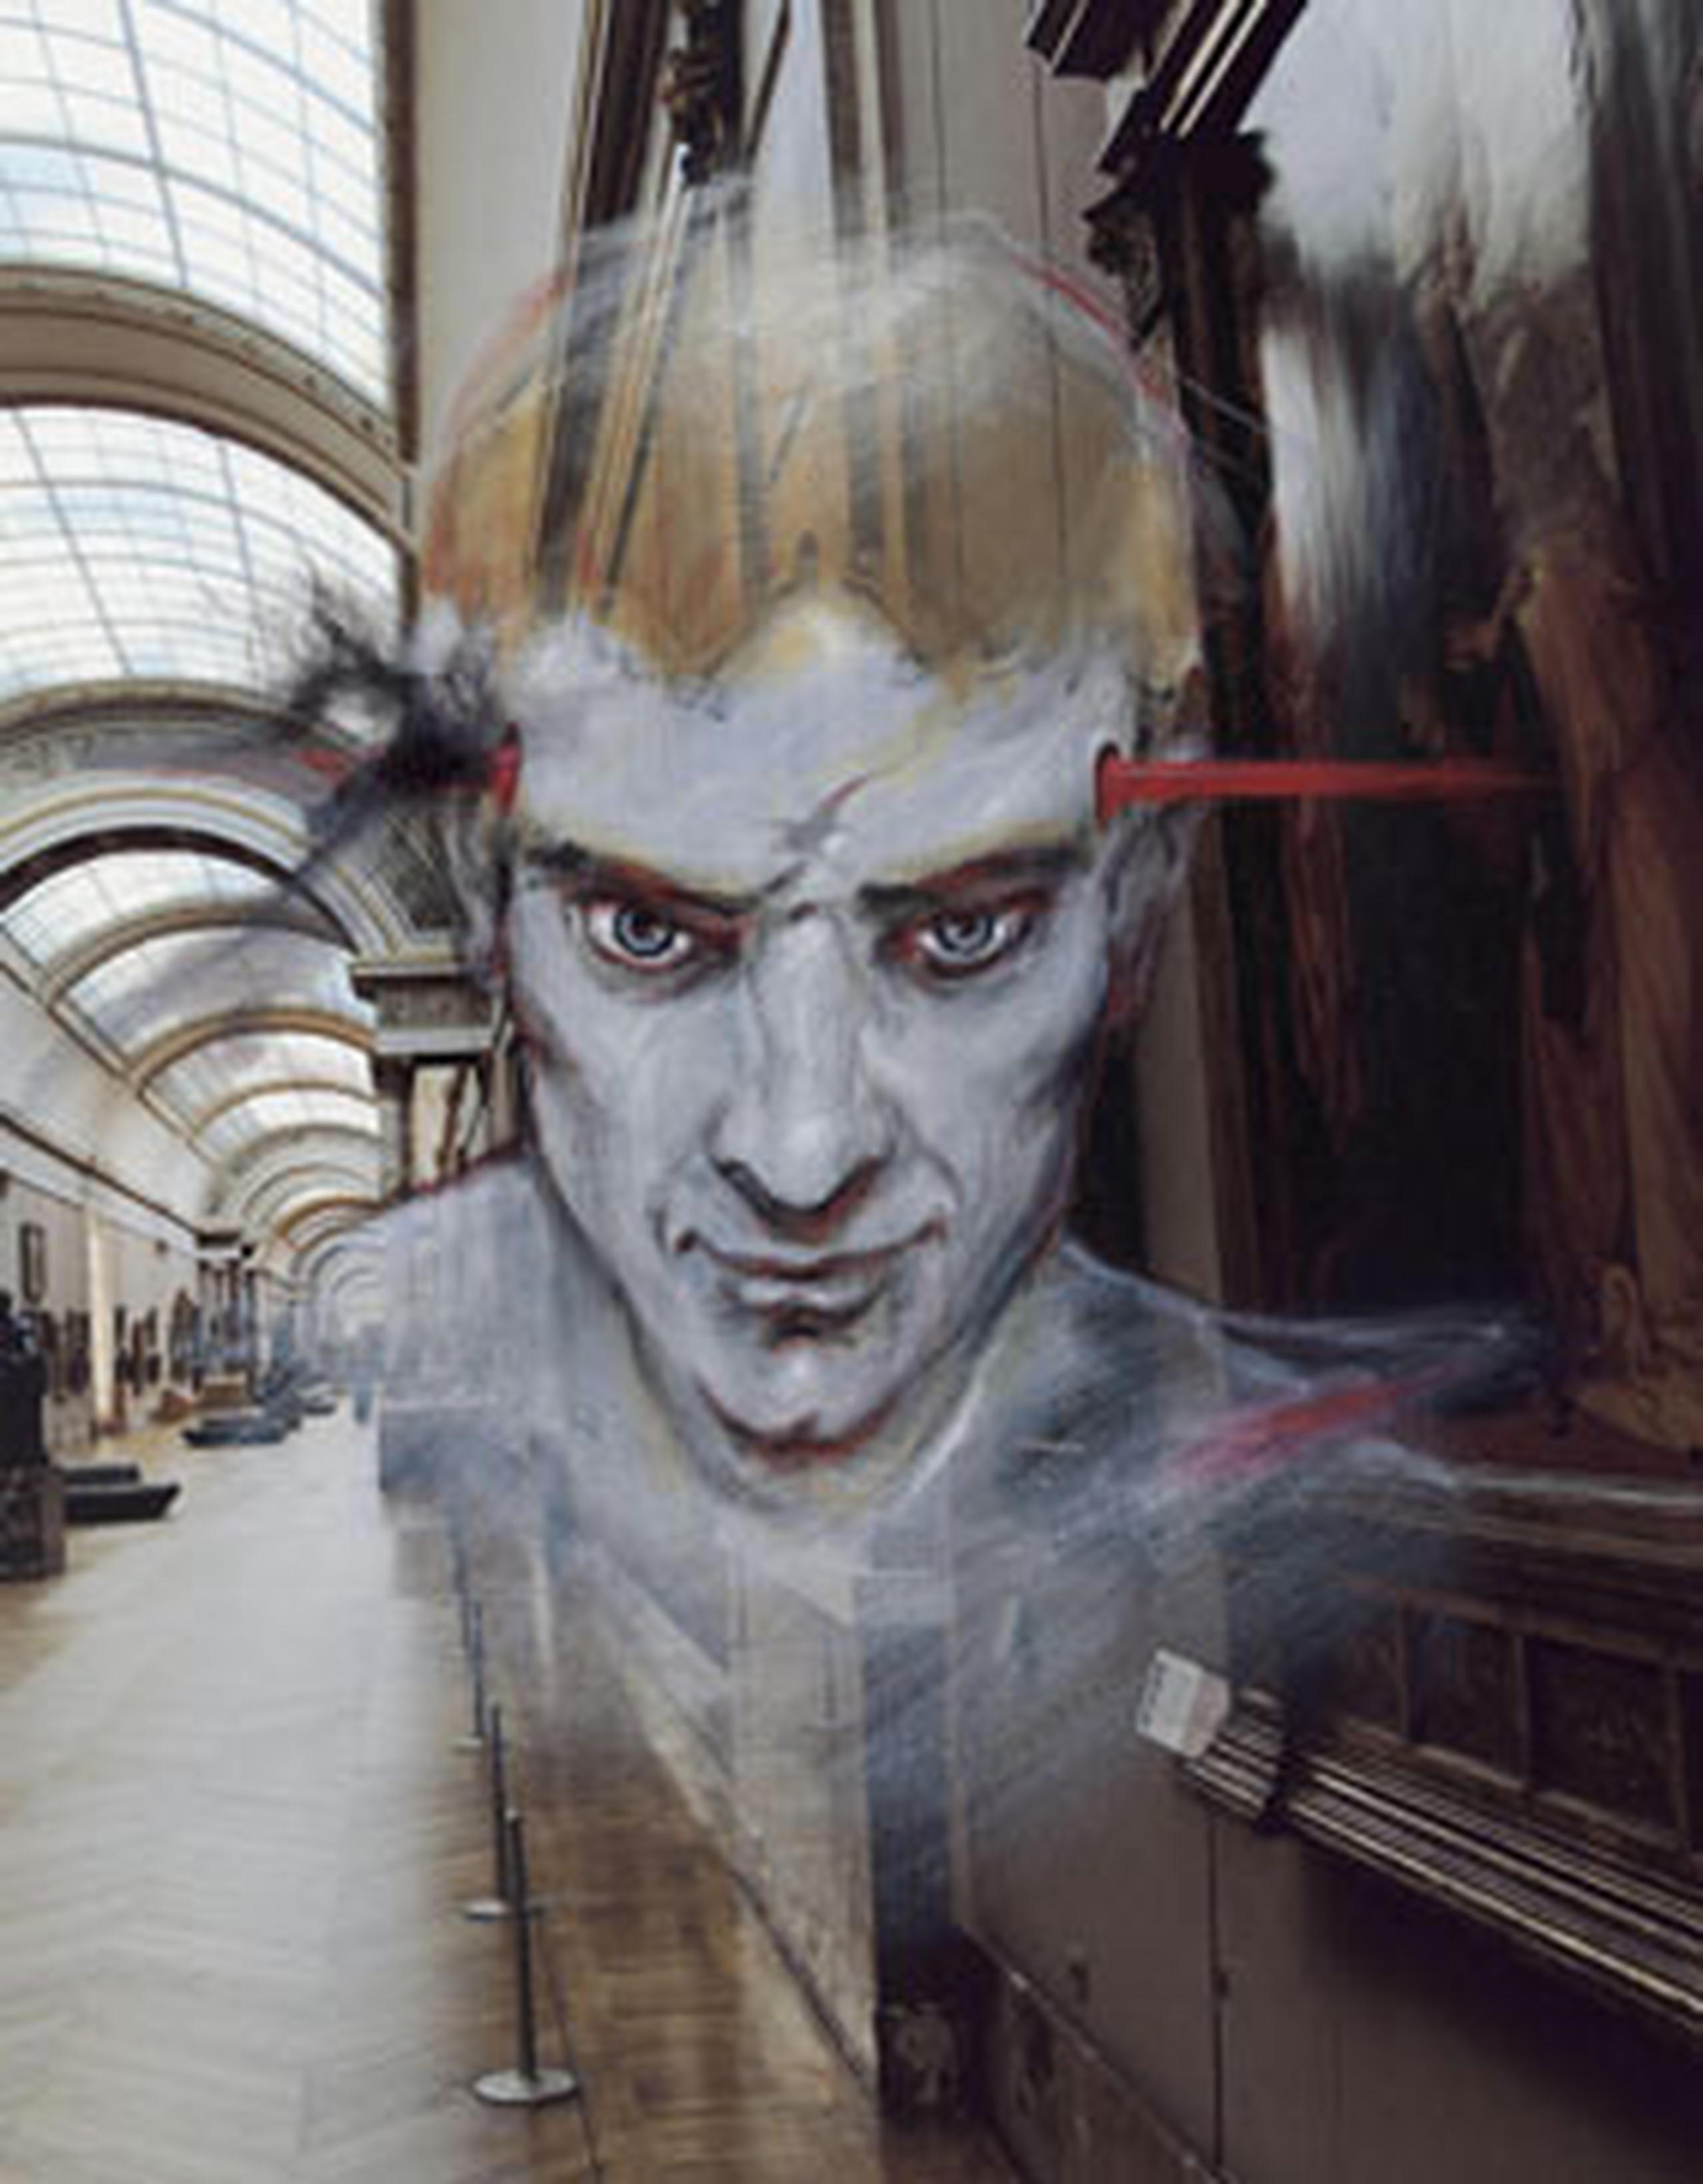 "Los fantasmas del Louvre", podrá visitarse hasta el próximo 18 de marzo en el Museo del Louvre. (EFE)